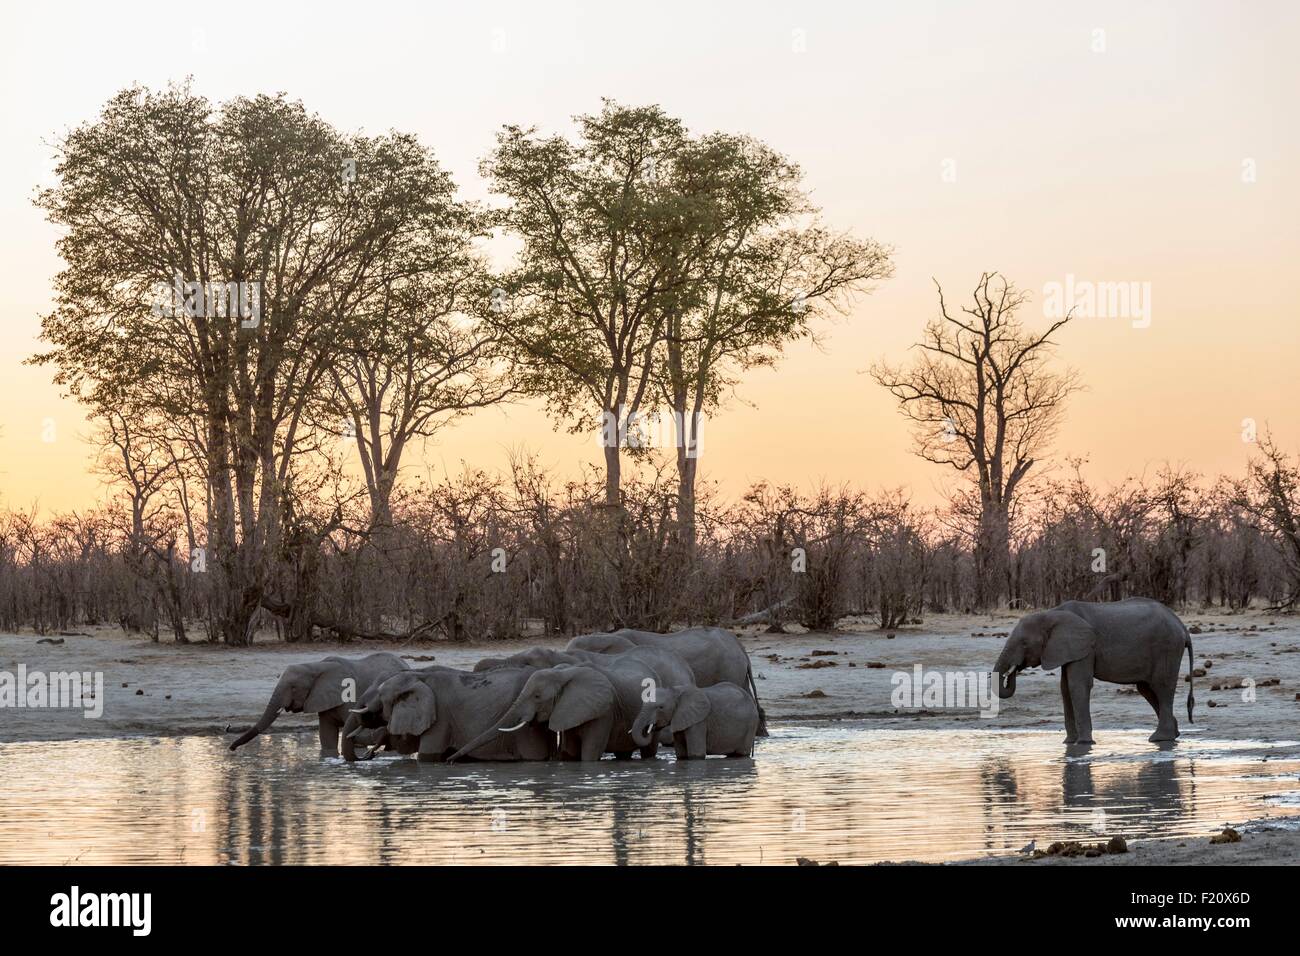 Le Botswana, Chobe, Savuti, elephant (Loxodonta africana), à un waterpoint au coucher du soleil Banque D'Images